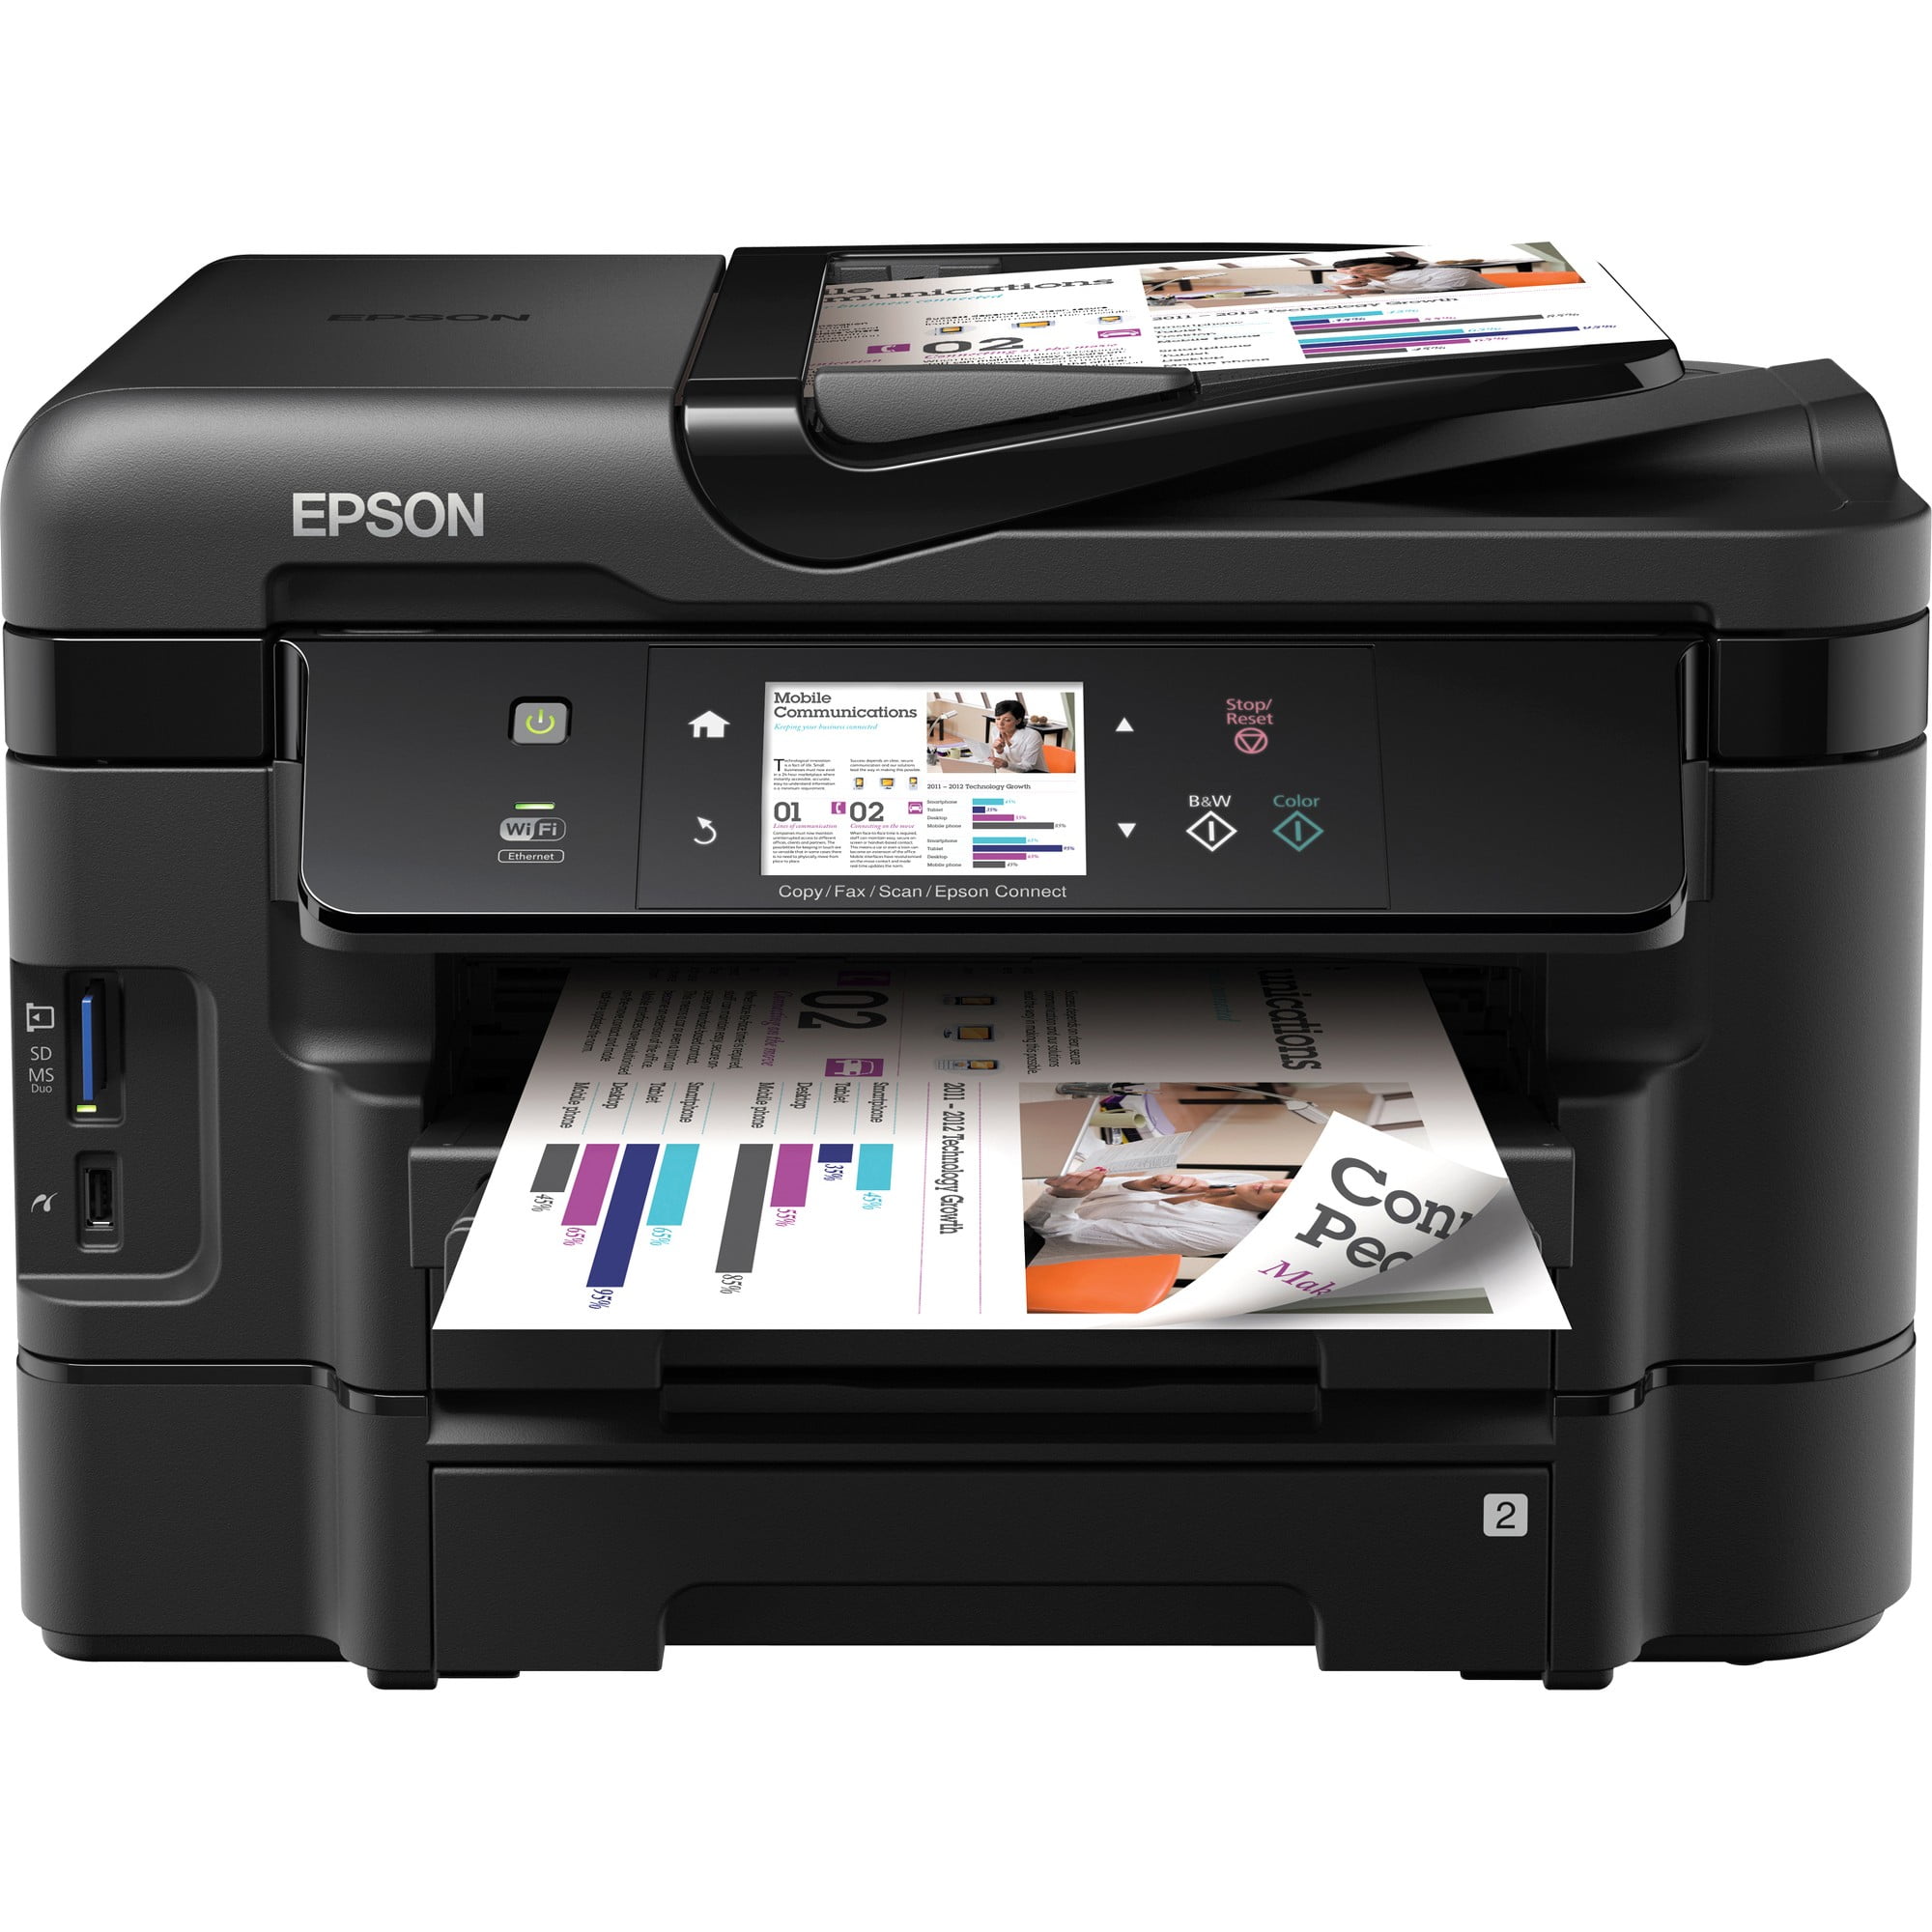  Epson  WorkForce WF  3540 Inkjet Multifunction Printer 